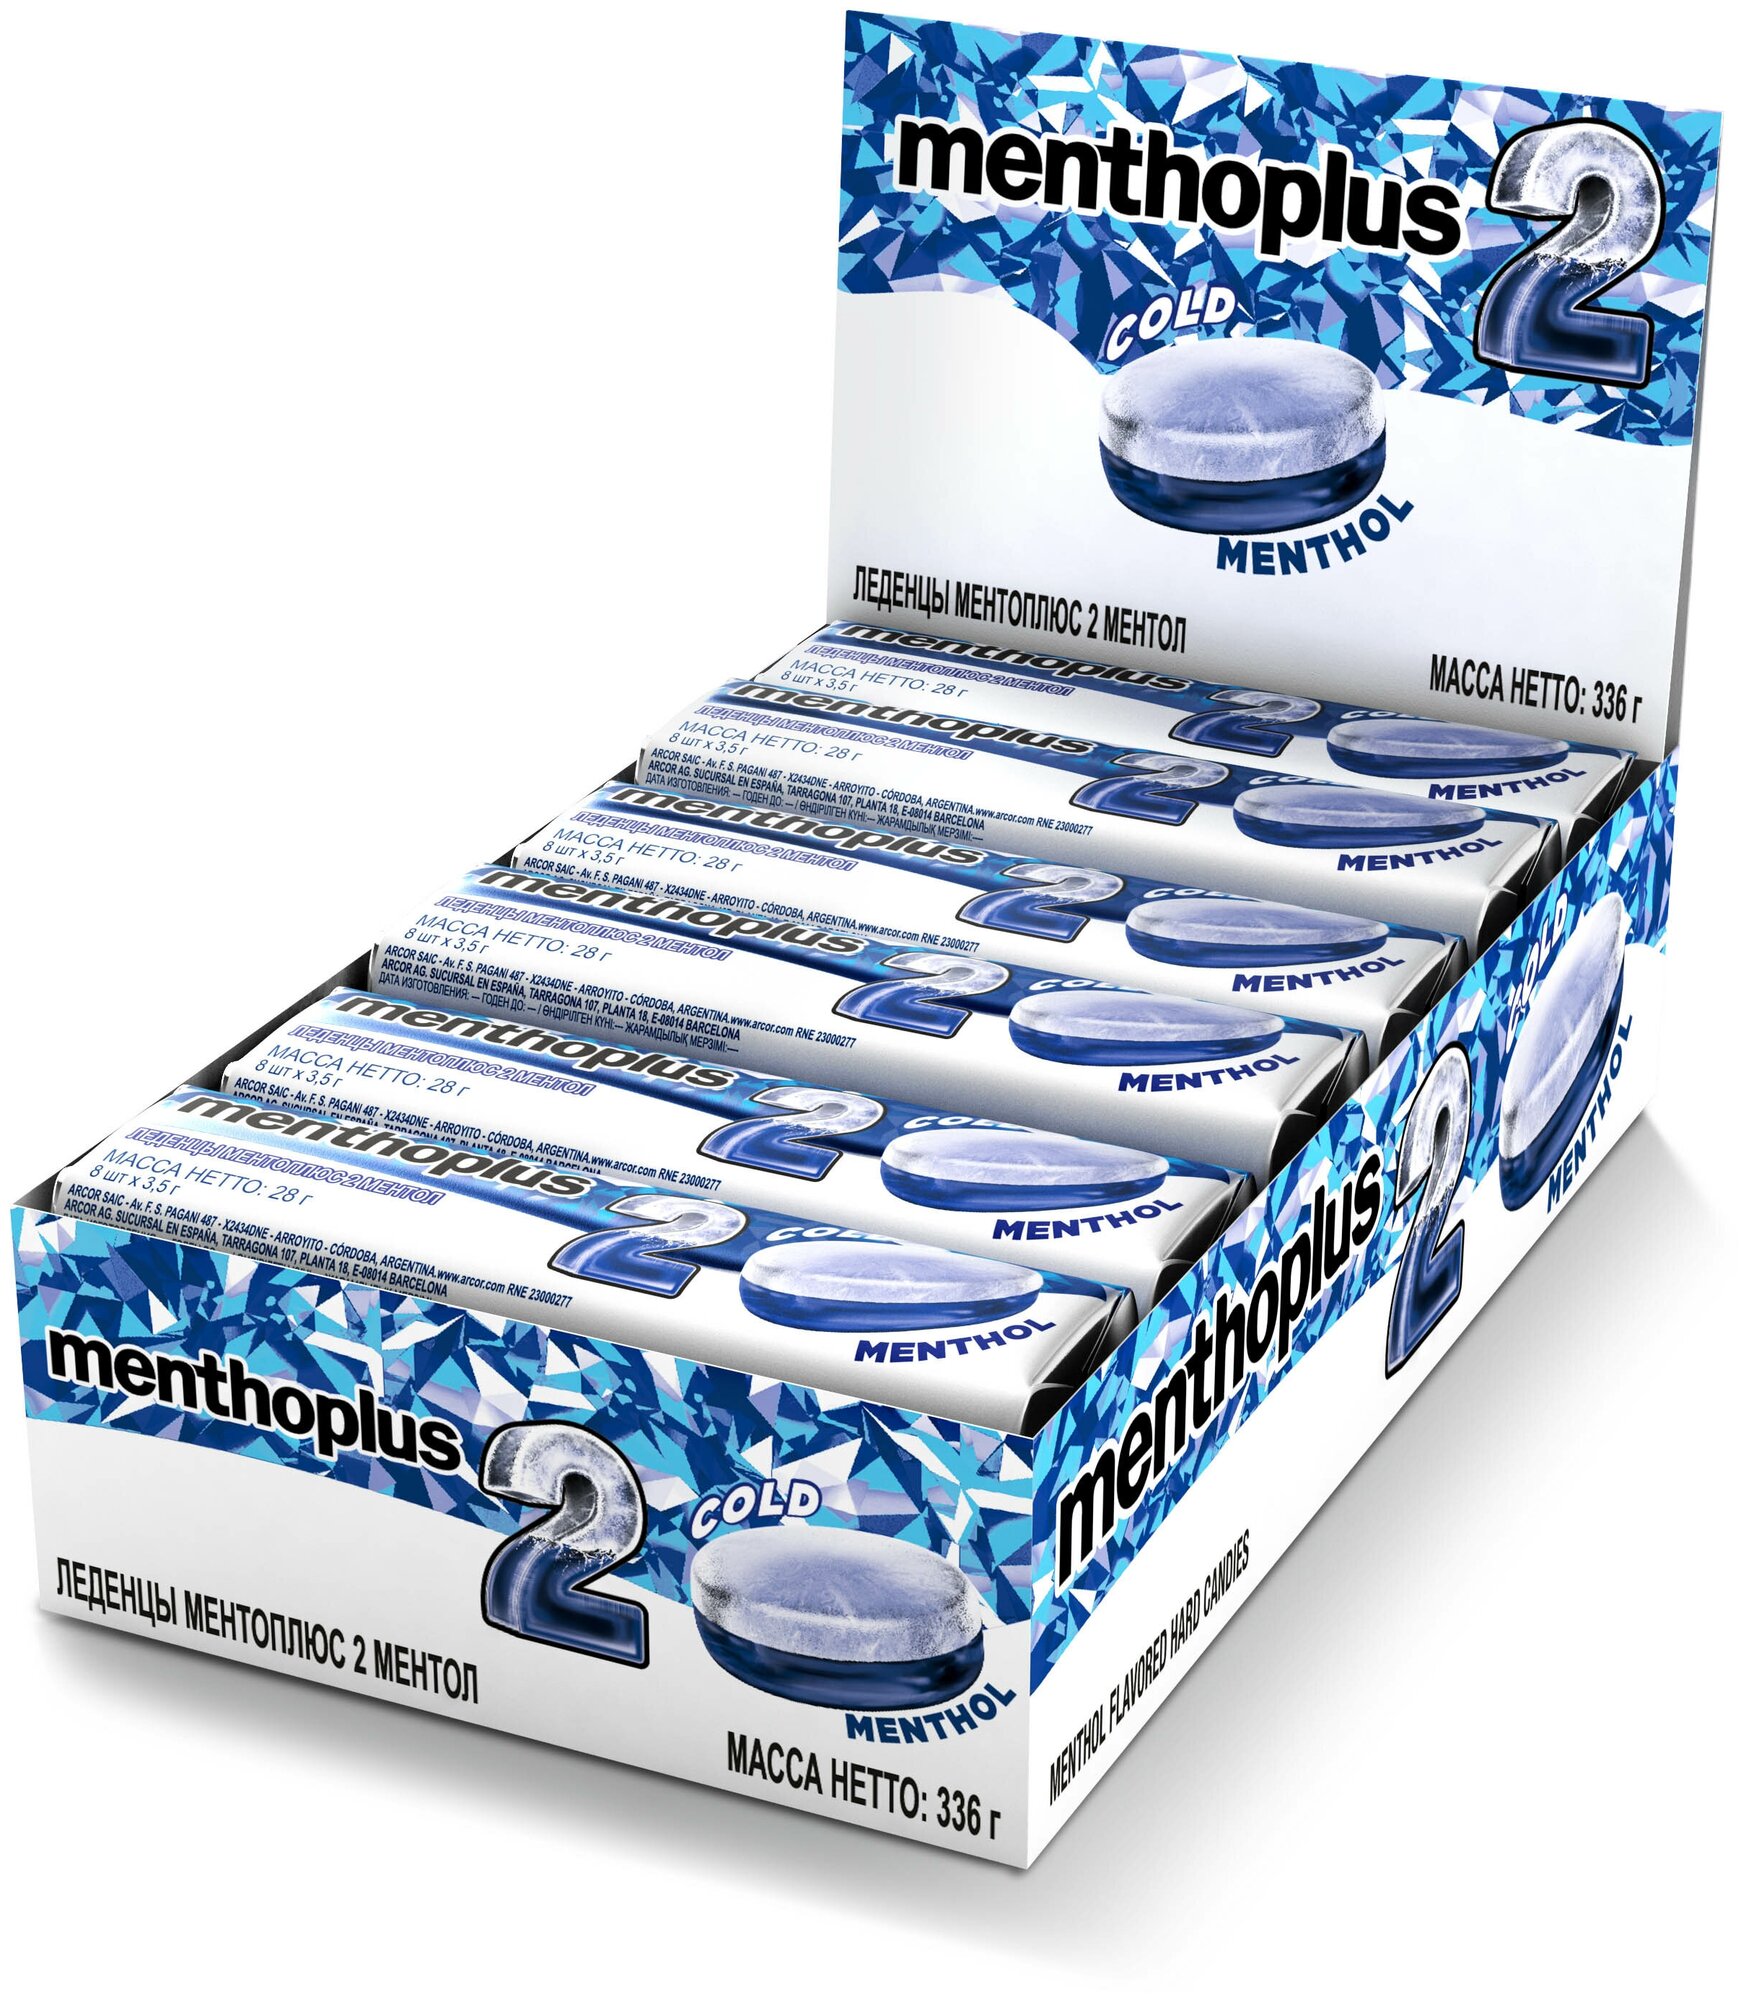 Леденцы Menthoplus 2-MENTHOL 28 г. набор 12 шт